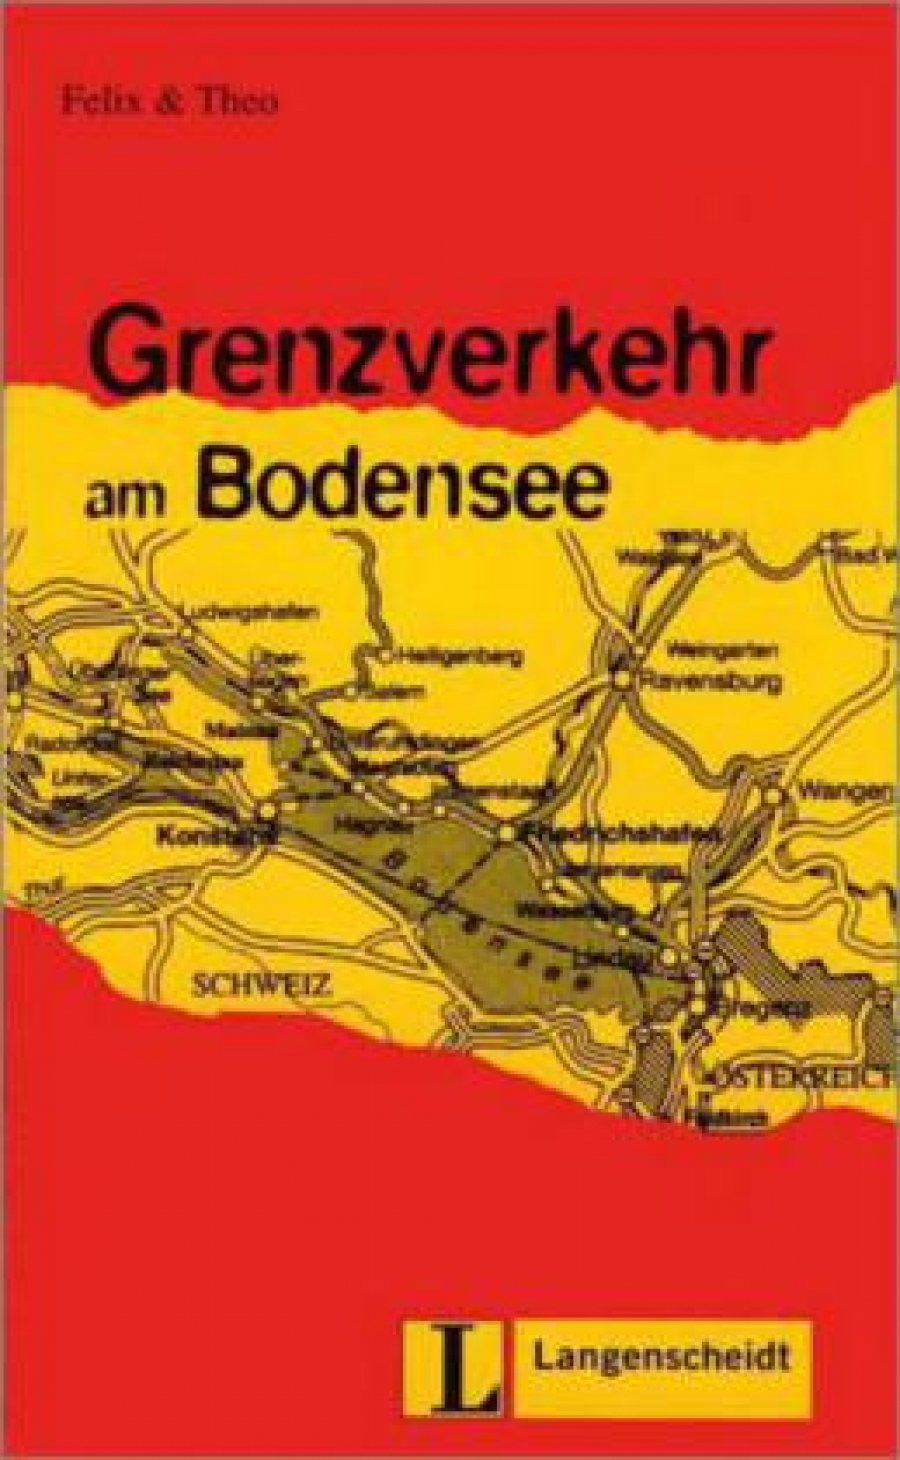 Felix Grenzverkehr am Bodensee 